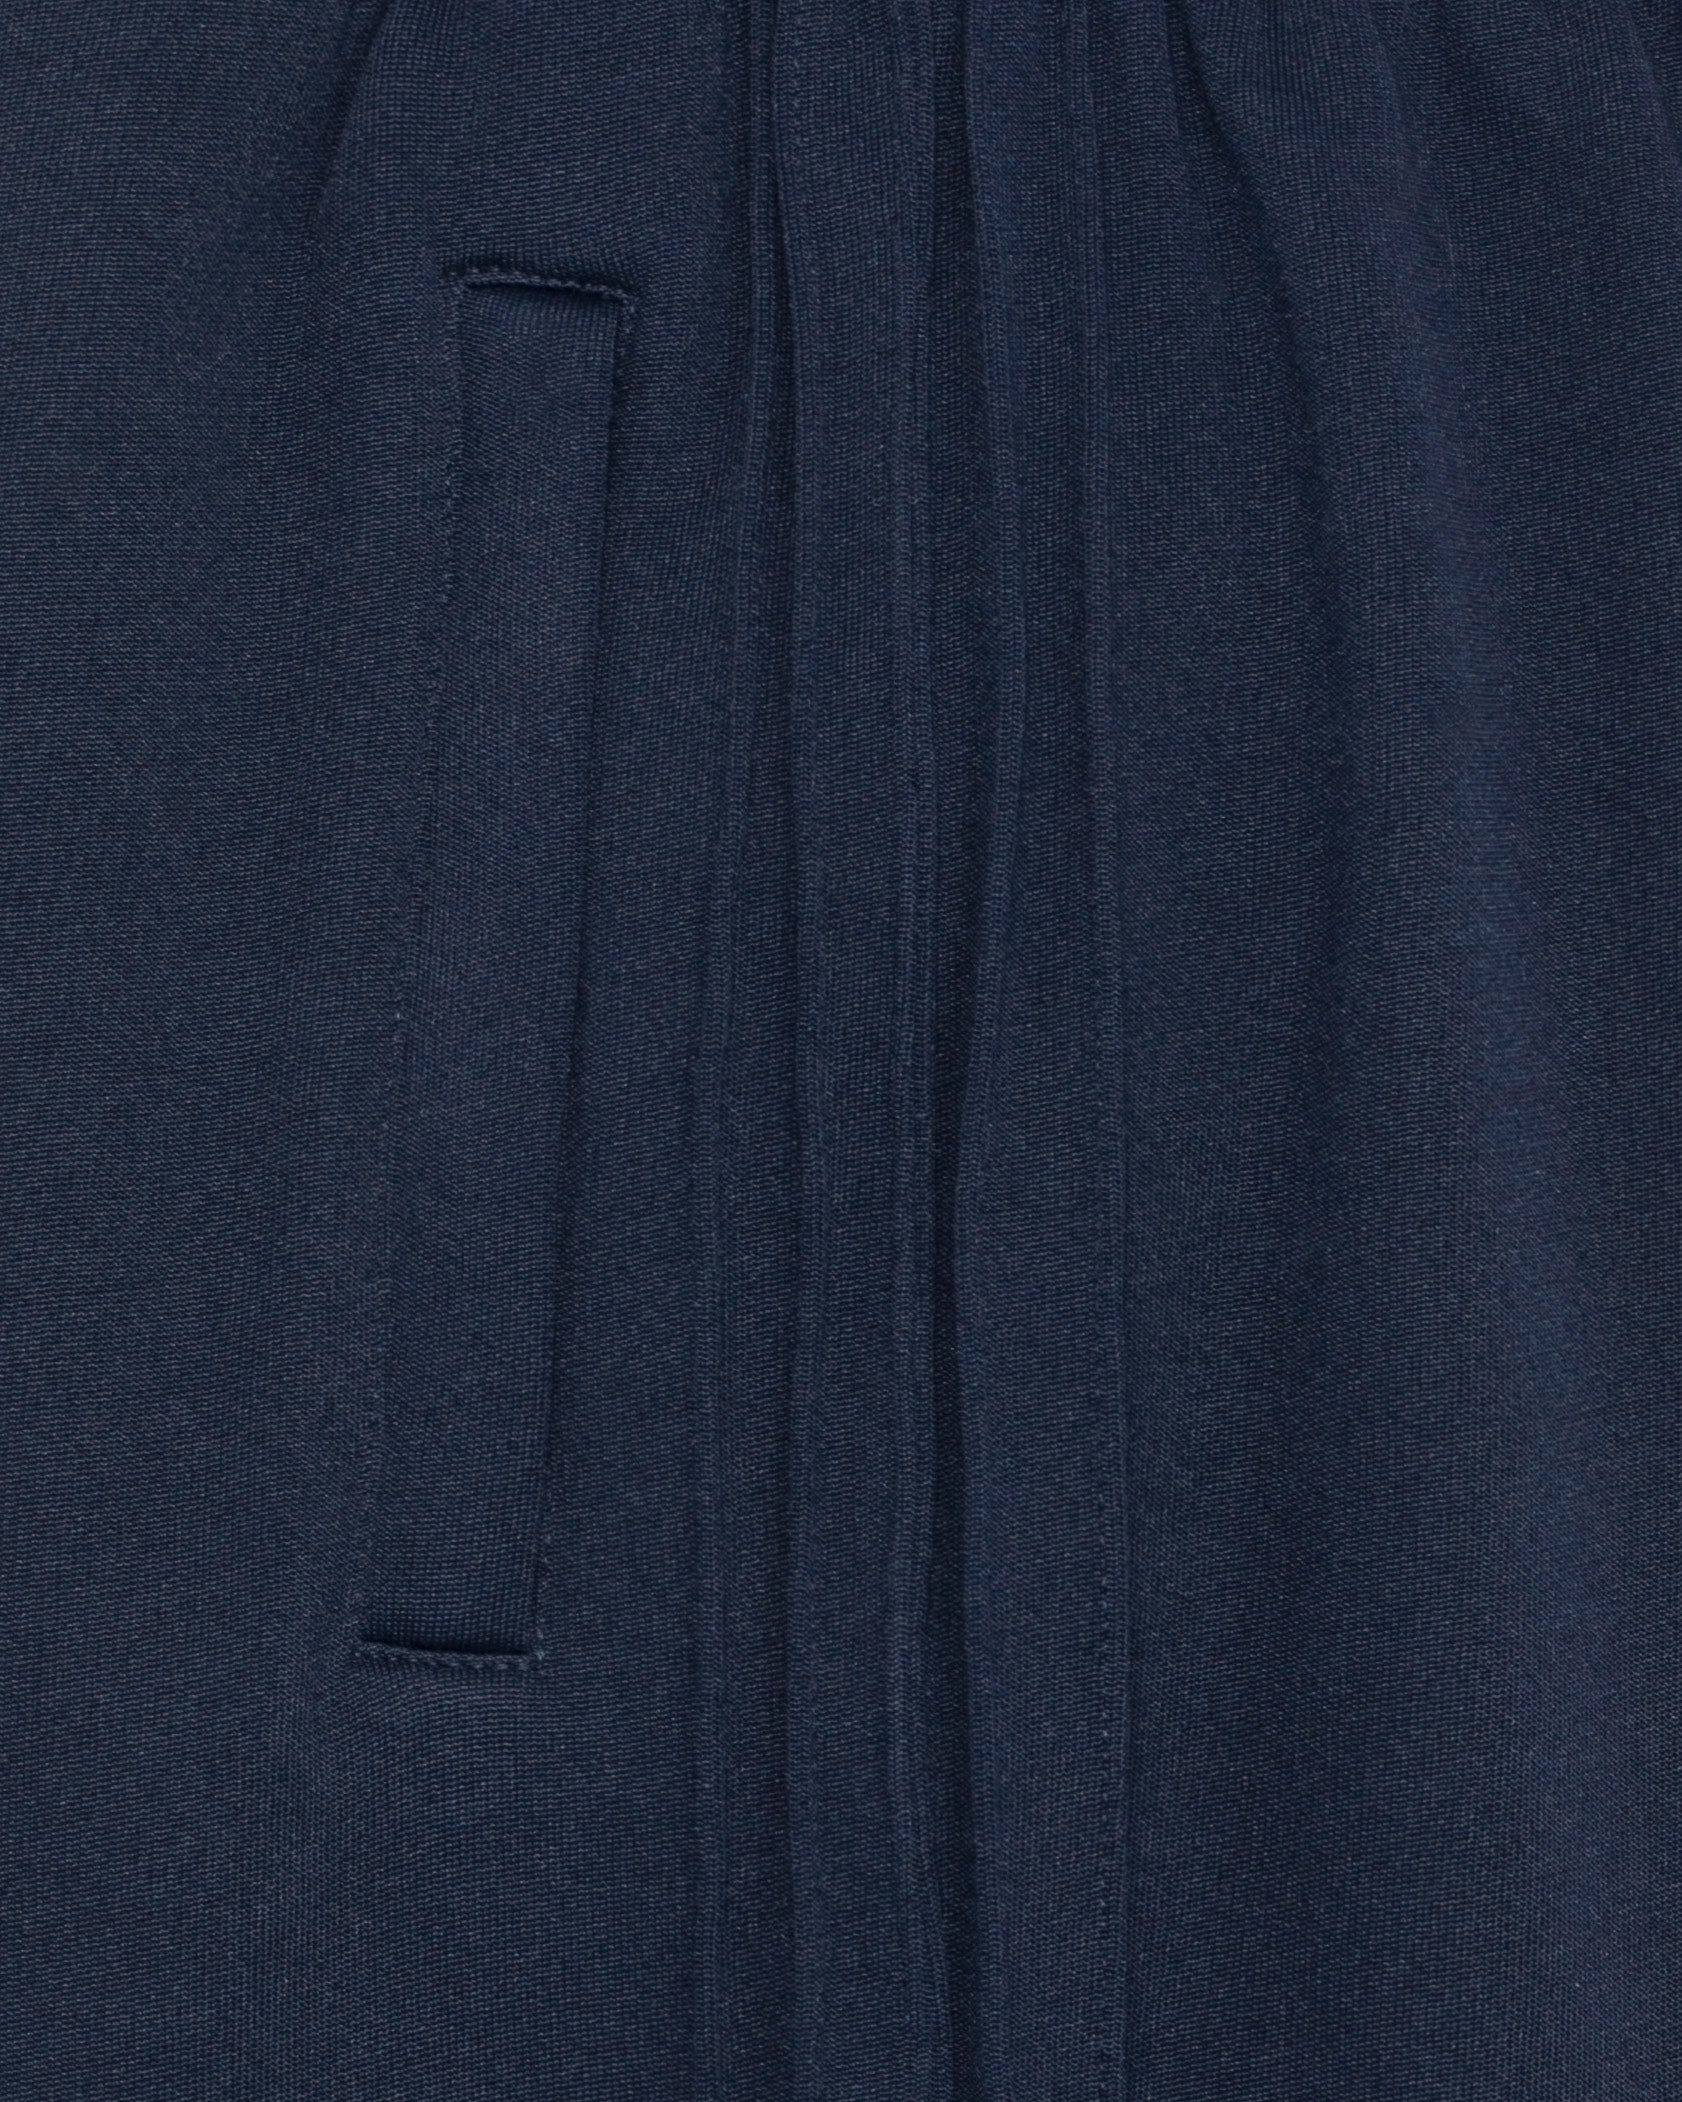 Pantalon de luxe pour homme Erevan, coupe droite, ceinture élastique, cinq nervures côtés, en jersey de coton et polyester, fabriquée en france